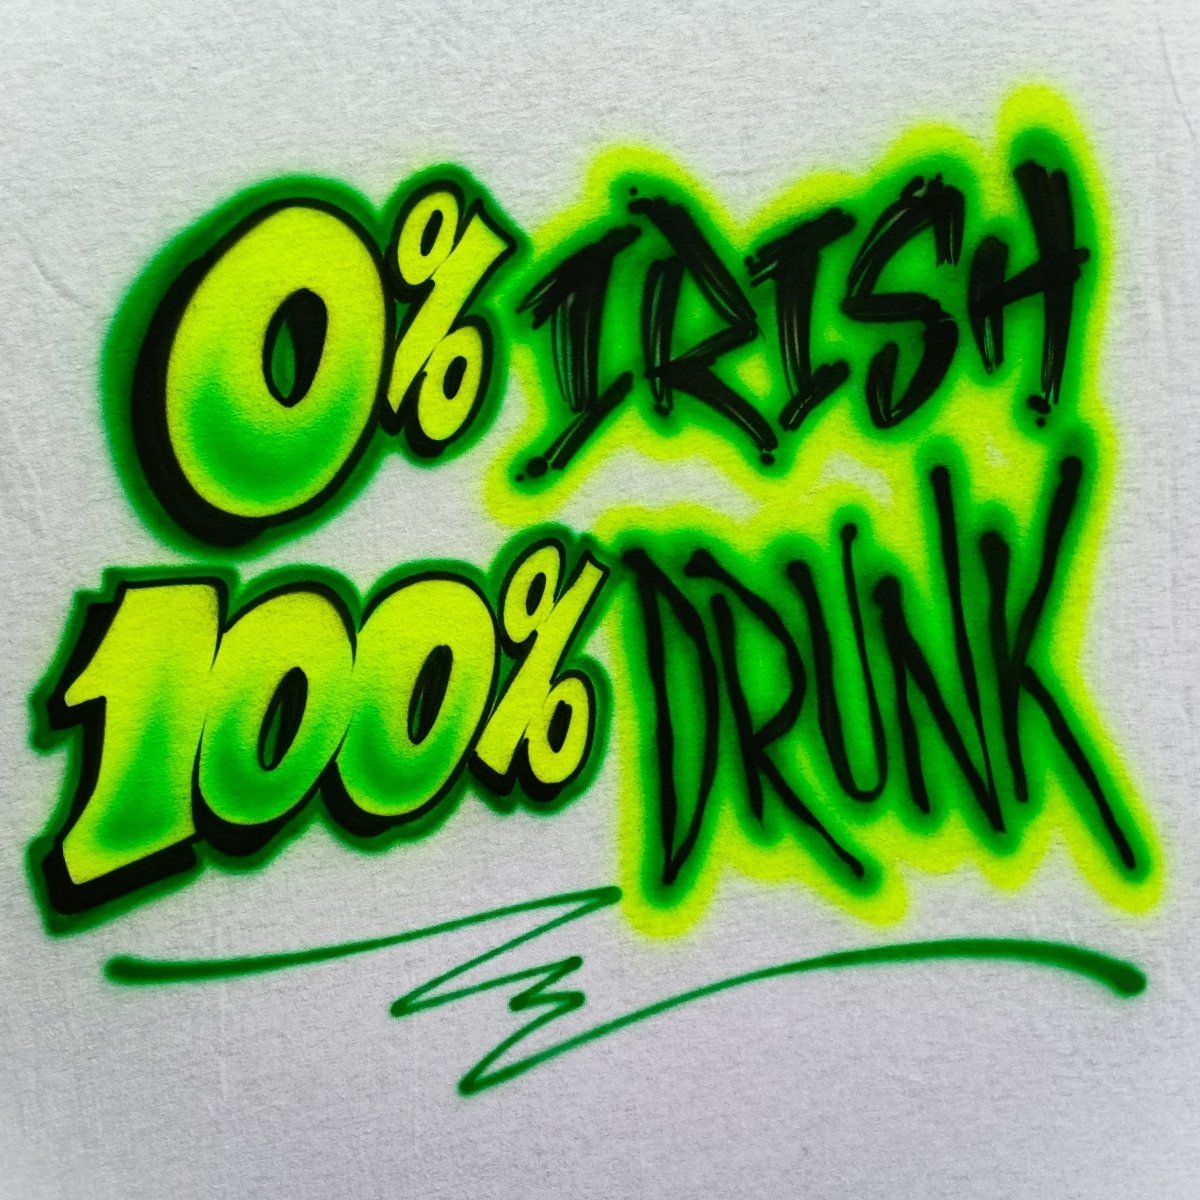 0% Irish, 100% Drunk Customizable Airbrush T shirt Design from Airbrush Customs x Dale The Airbrush Guy